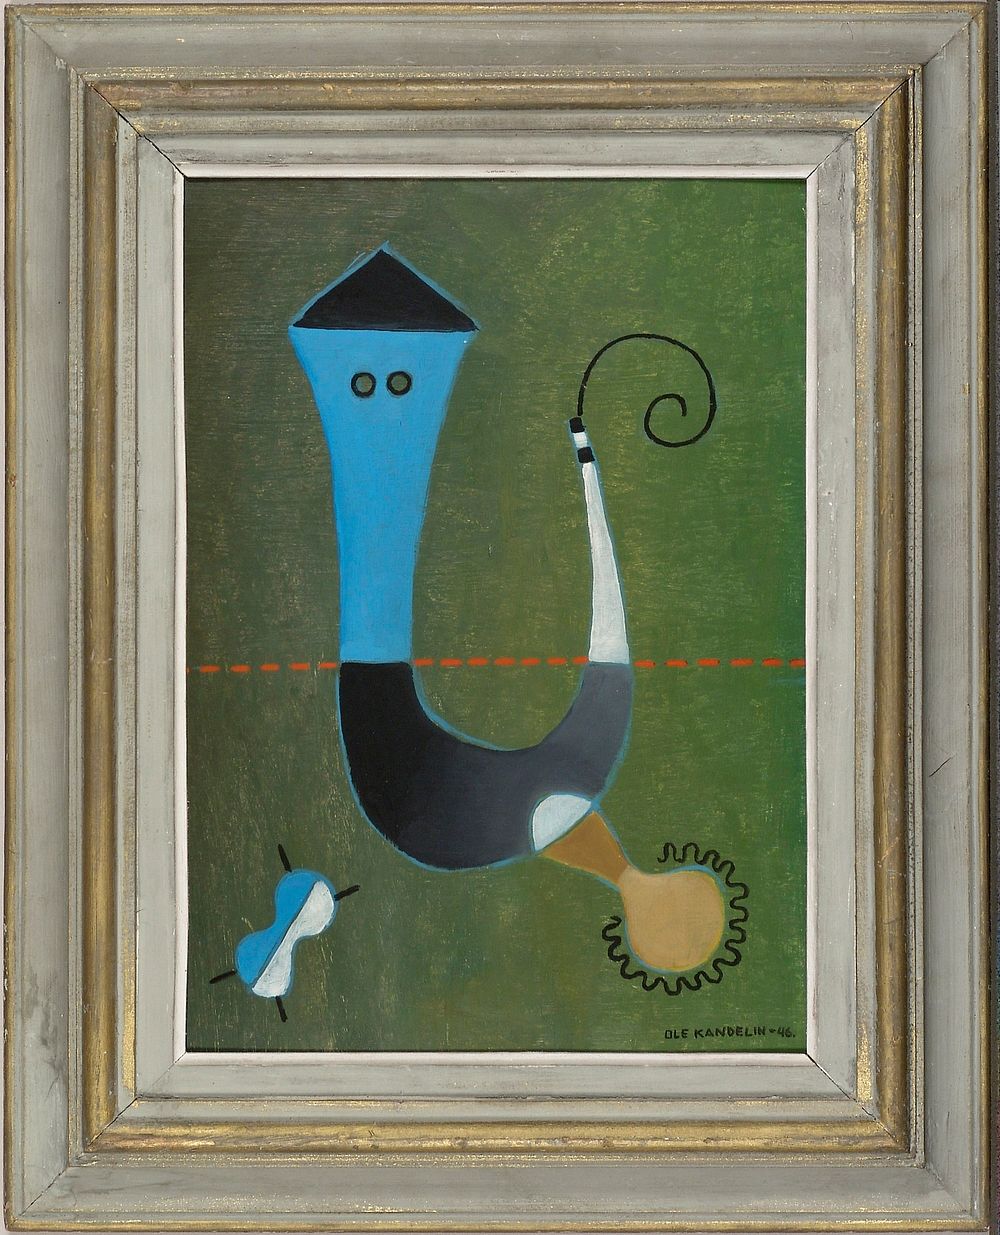 Composition, 1946, Ole Kandelin